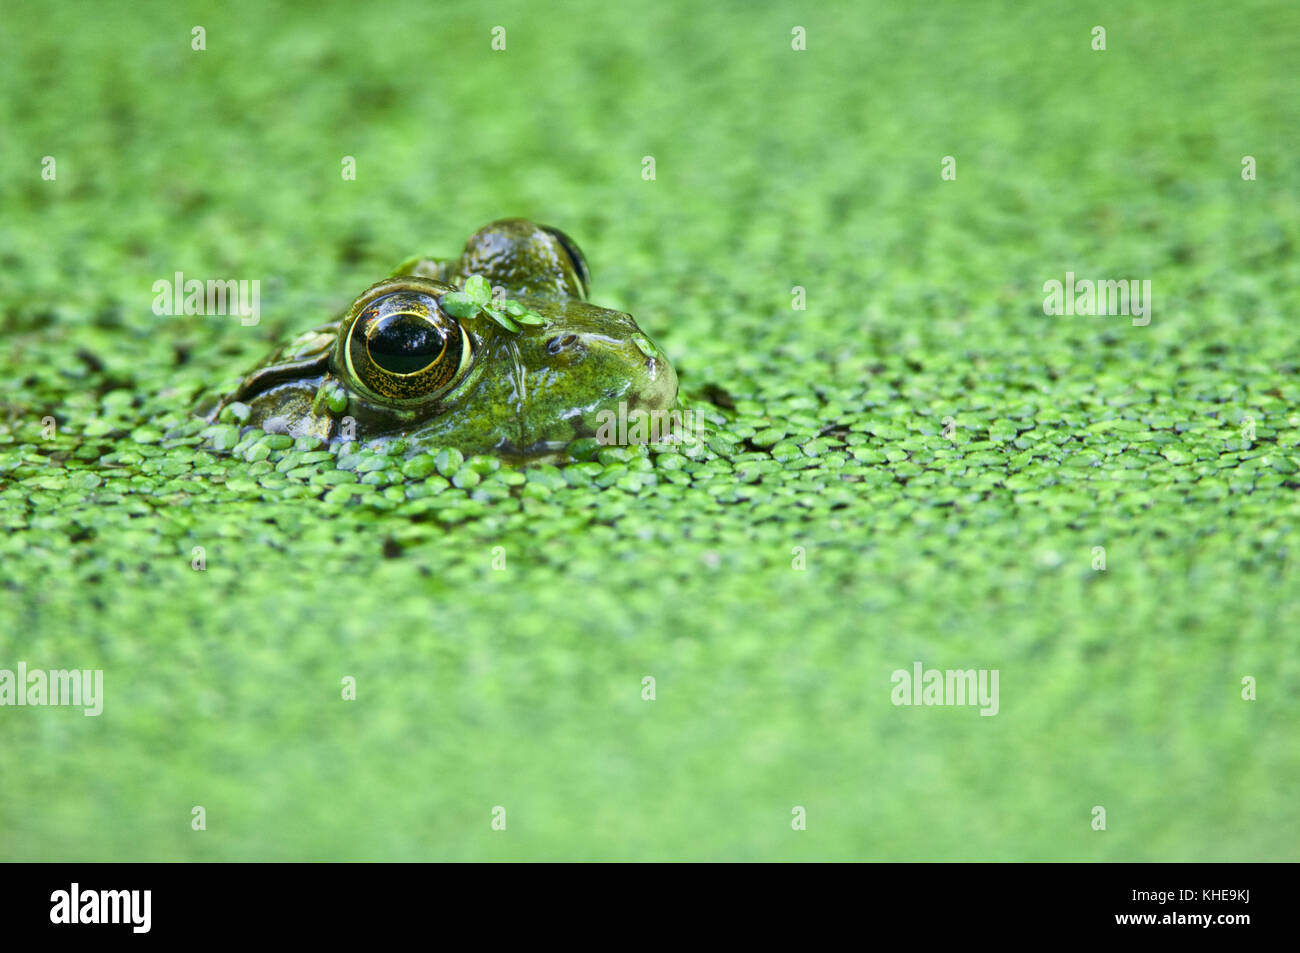 Rana verde sommersa in lenti d'acqua di stagno riempito in Michigan, Stati Uniti, Nord America orientale Foto Stock